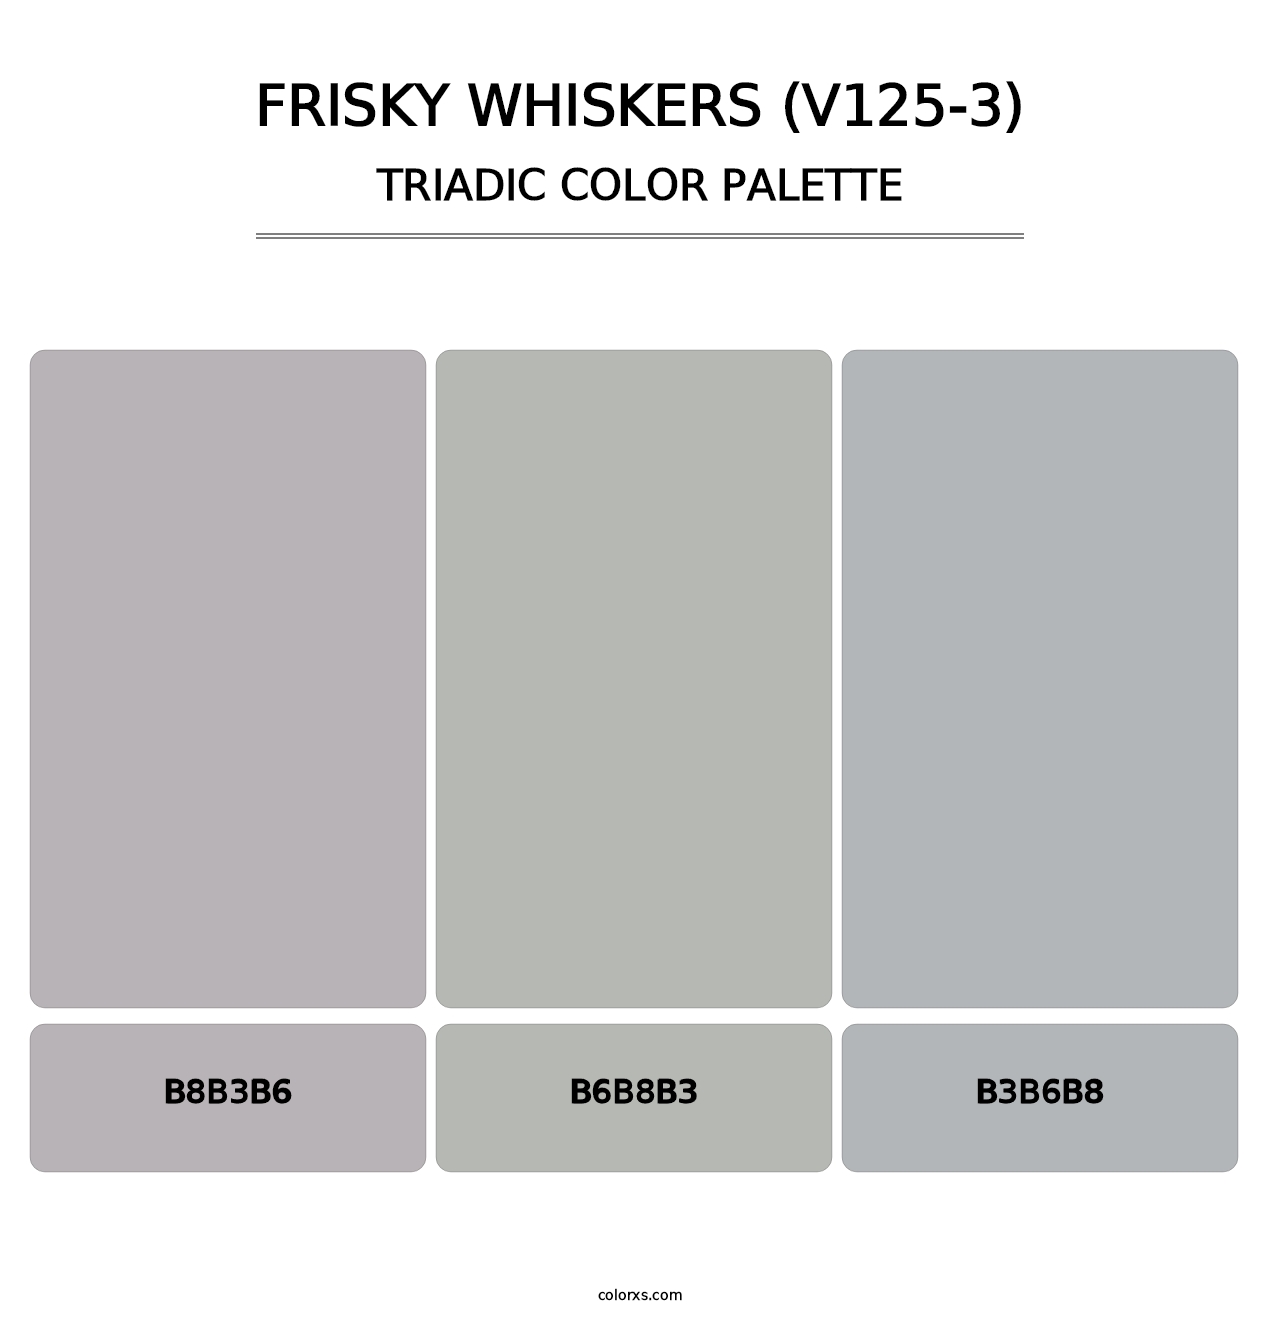 Frisky Whiskers (V125-3) - Triadic Color Palette